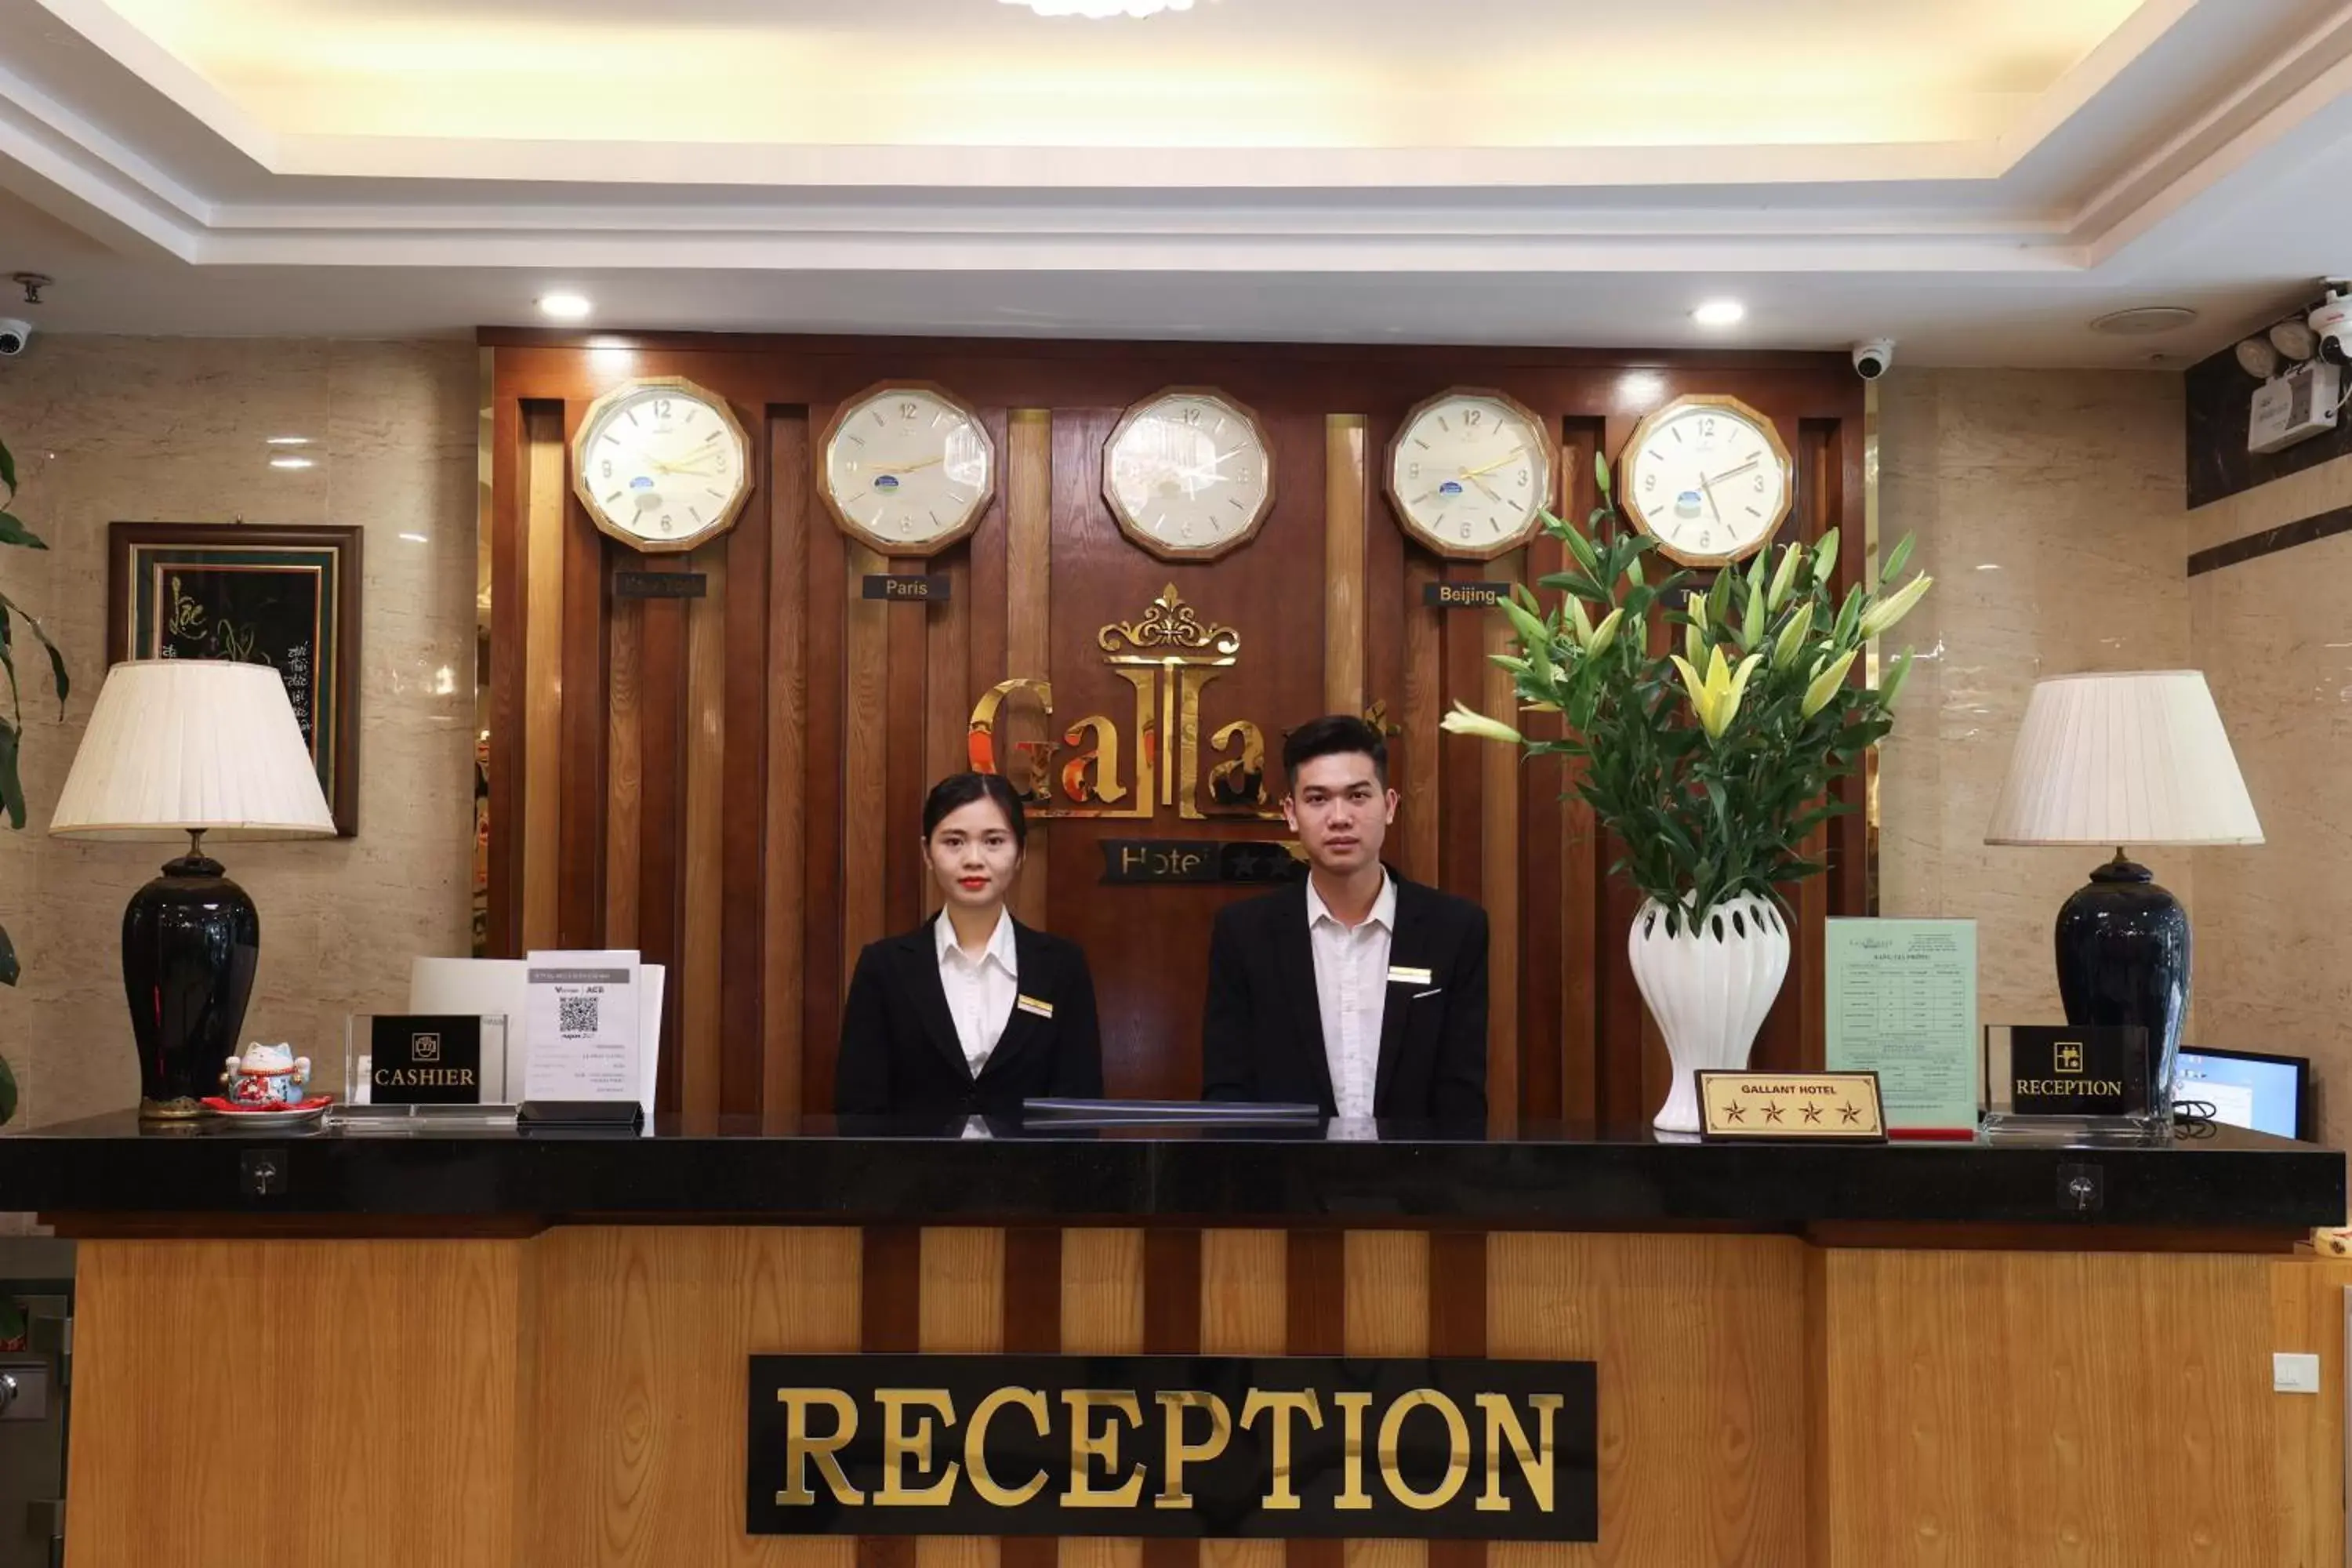 Staff, Lobby/Reception in Gallant Hotel